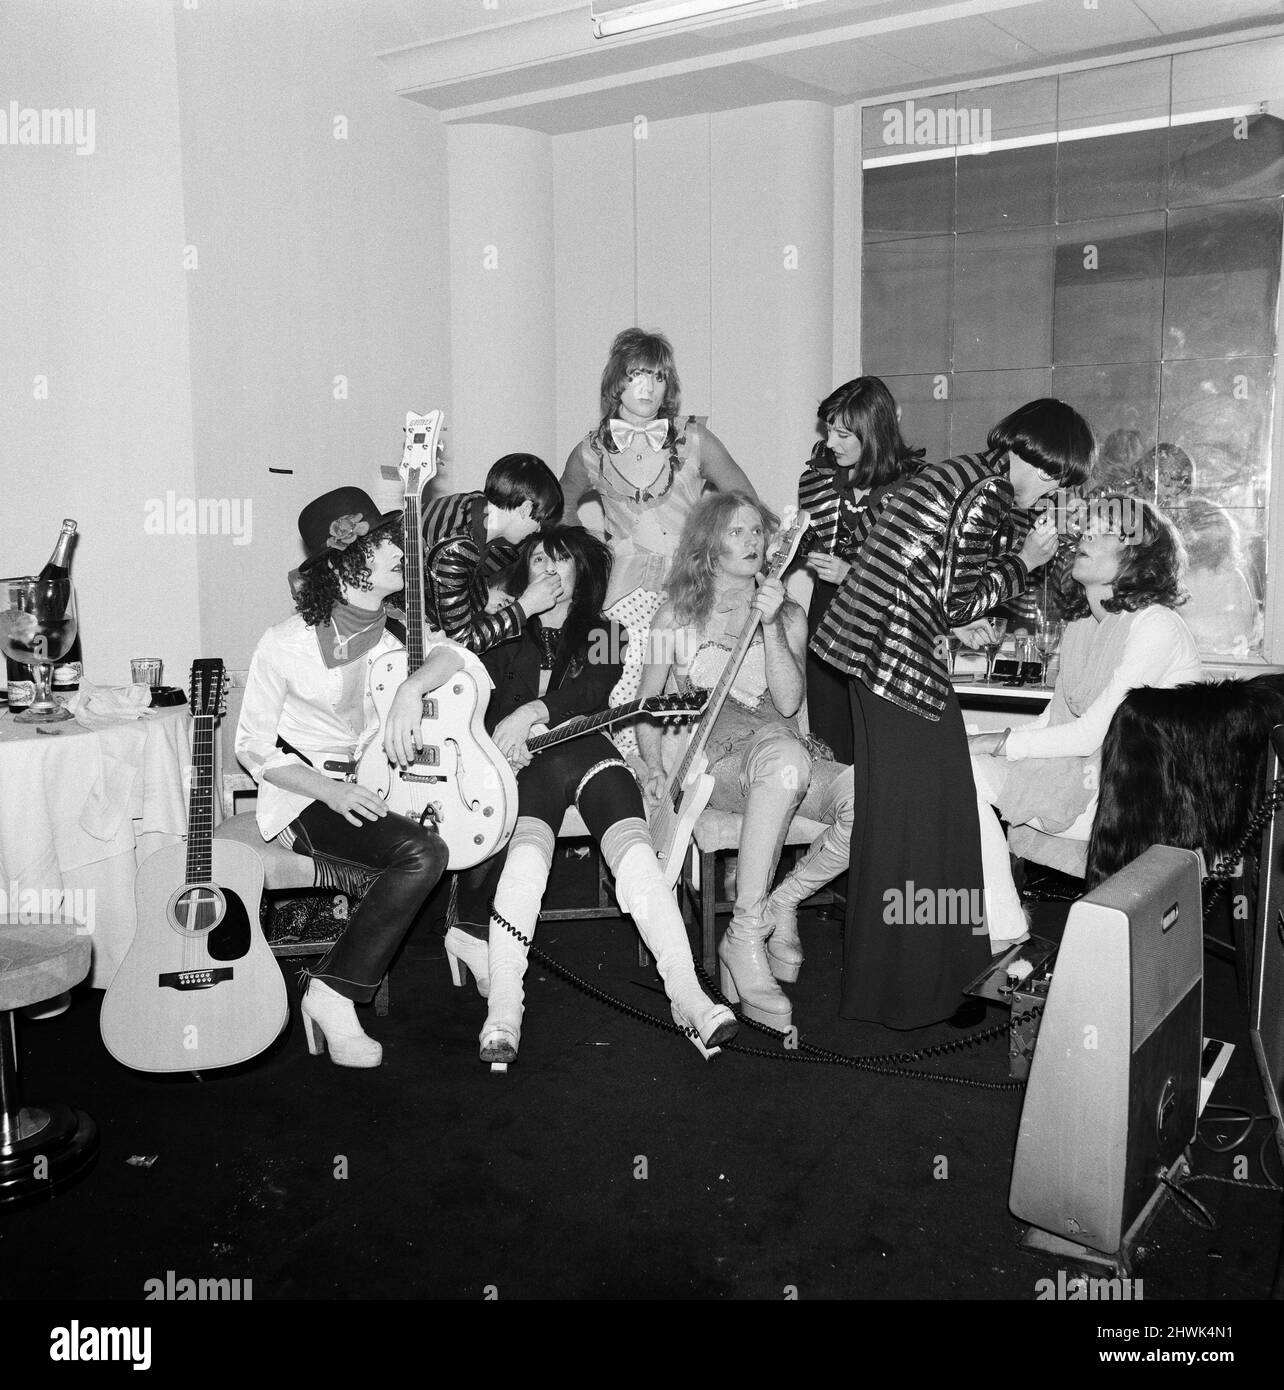 The New York Dolls at Biba party. 25th November 1973. Stock Photo